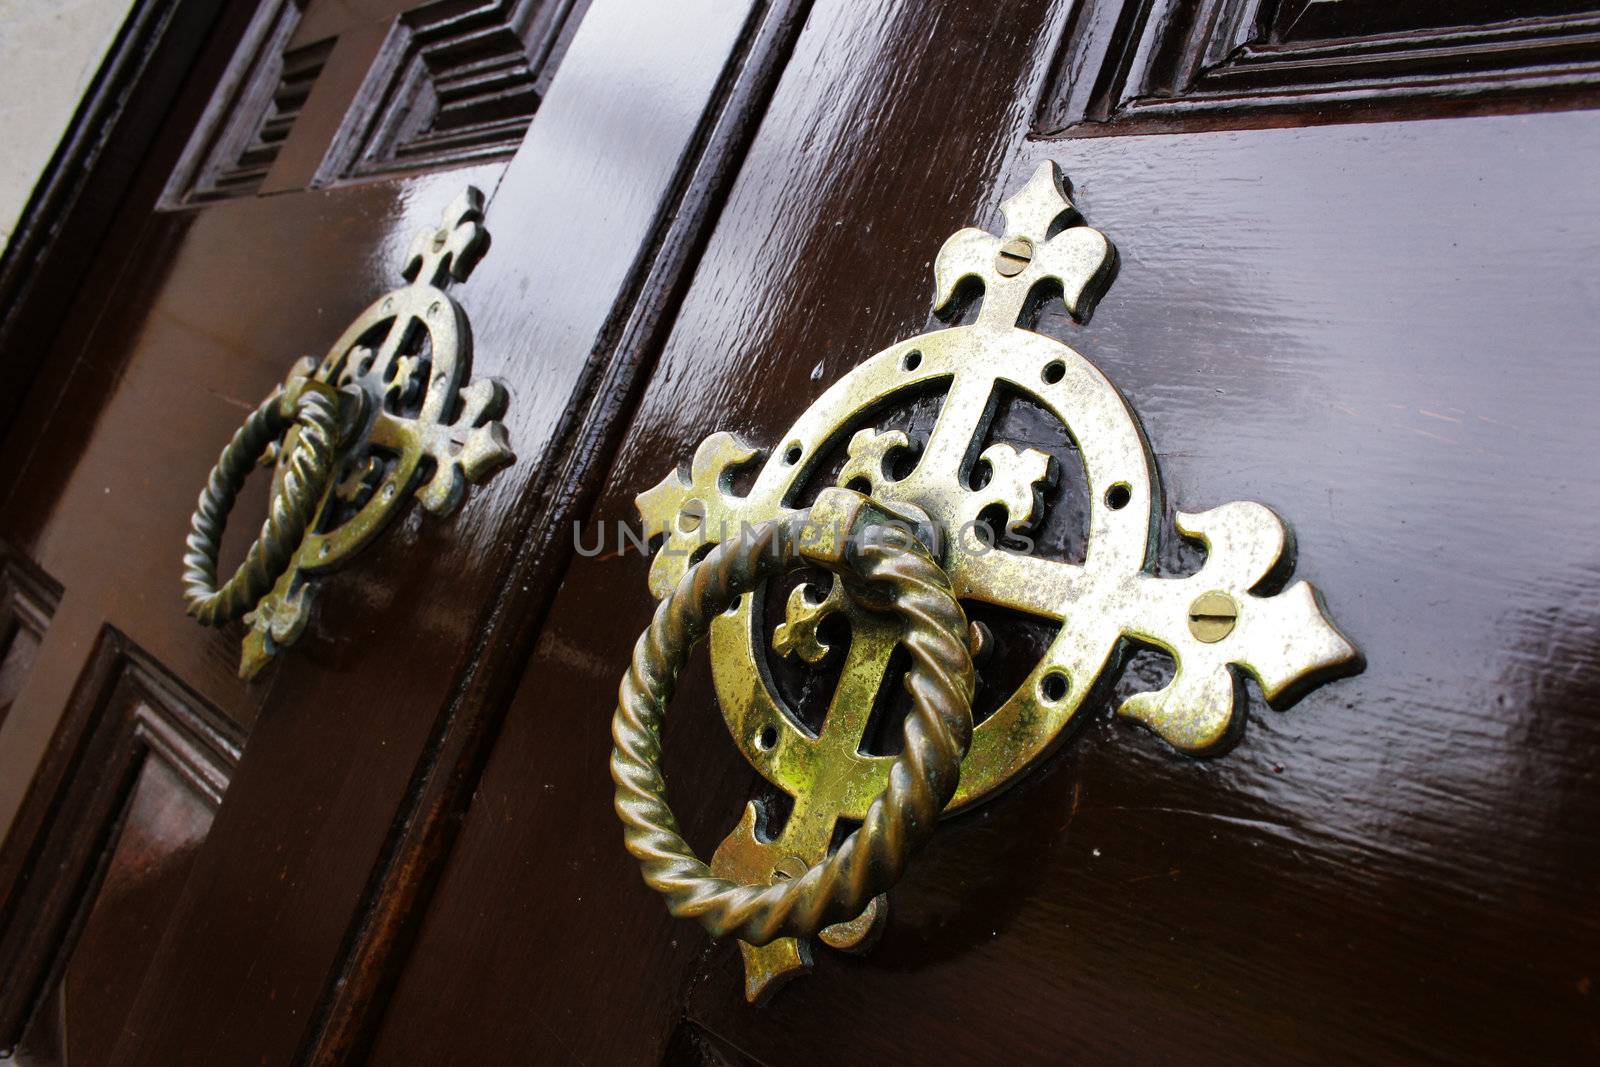 Old metal door handle knockers on a wooden door